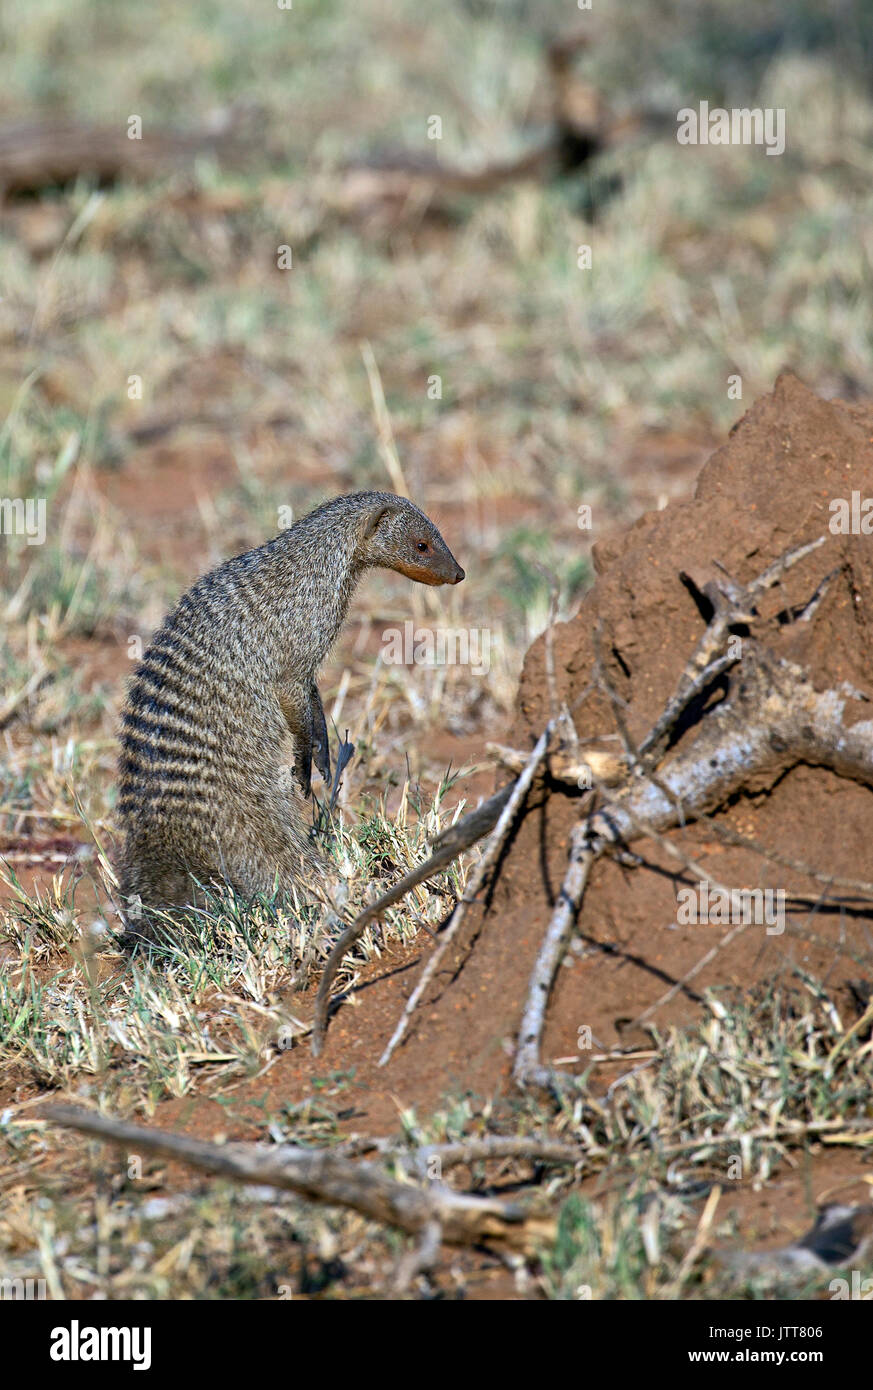 Wild mongoose taken in african safari Stock Photo